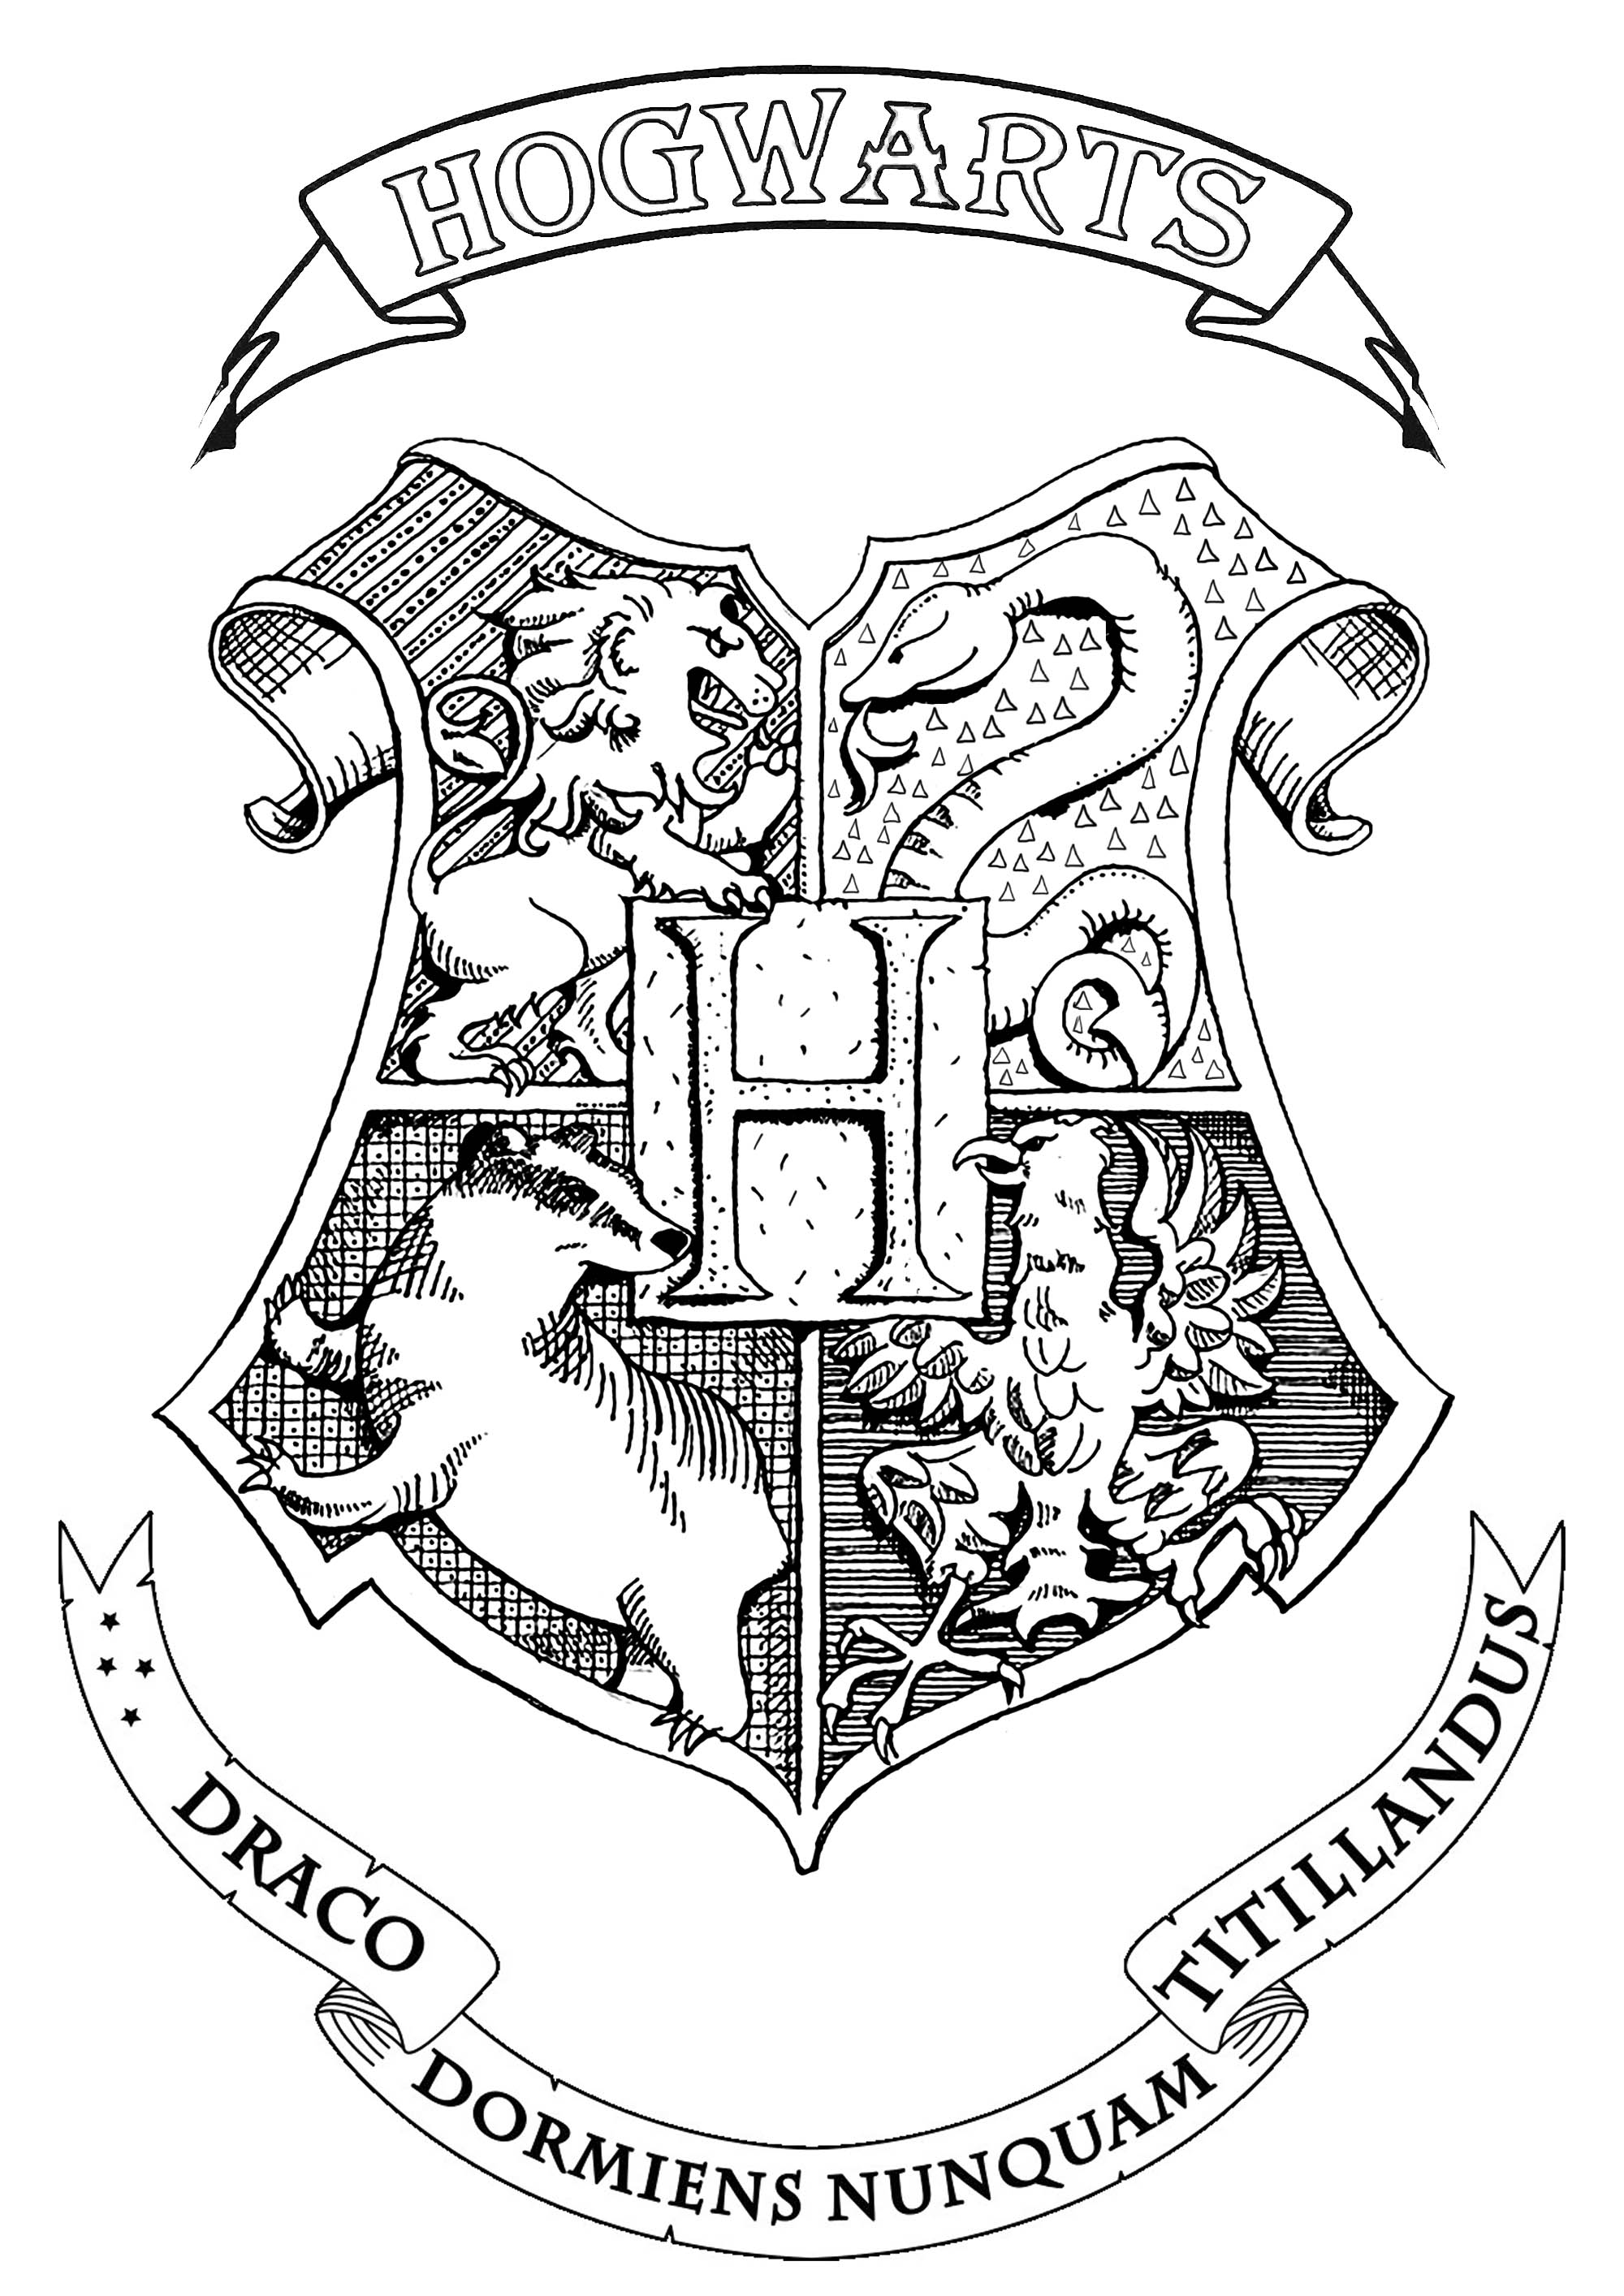 Le blason de Poudlard, l'école de Sorcellerie de la saga Harry Potter